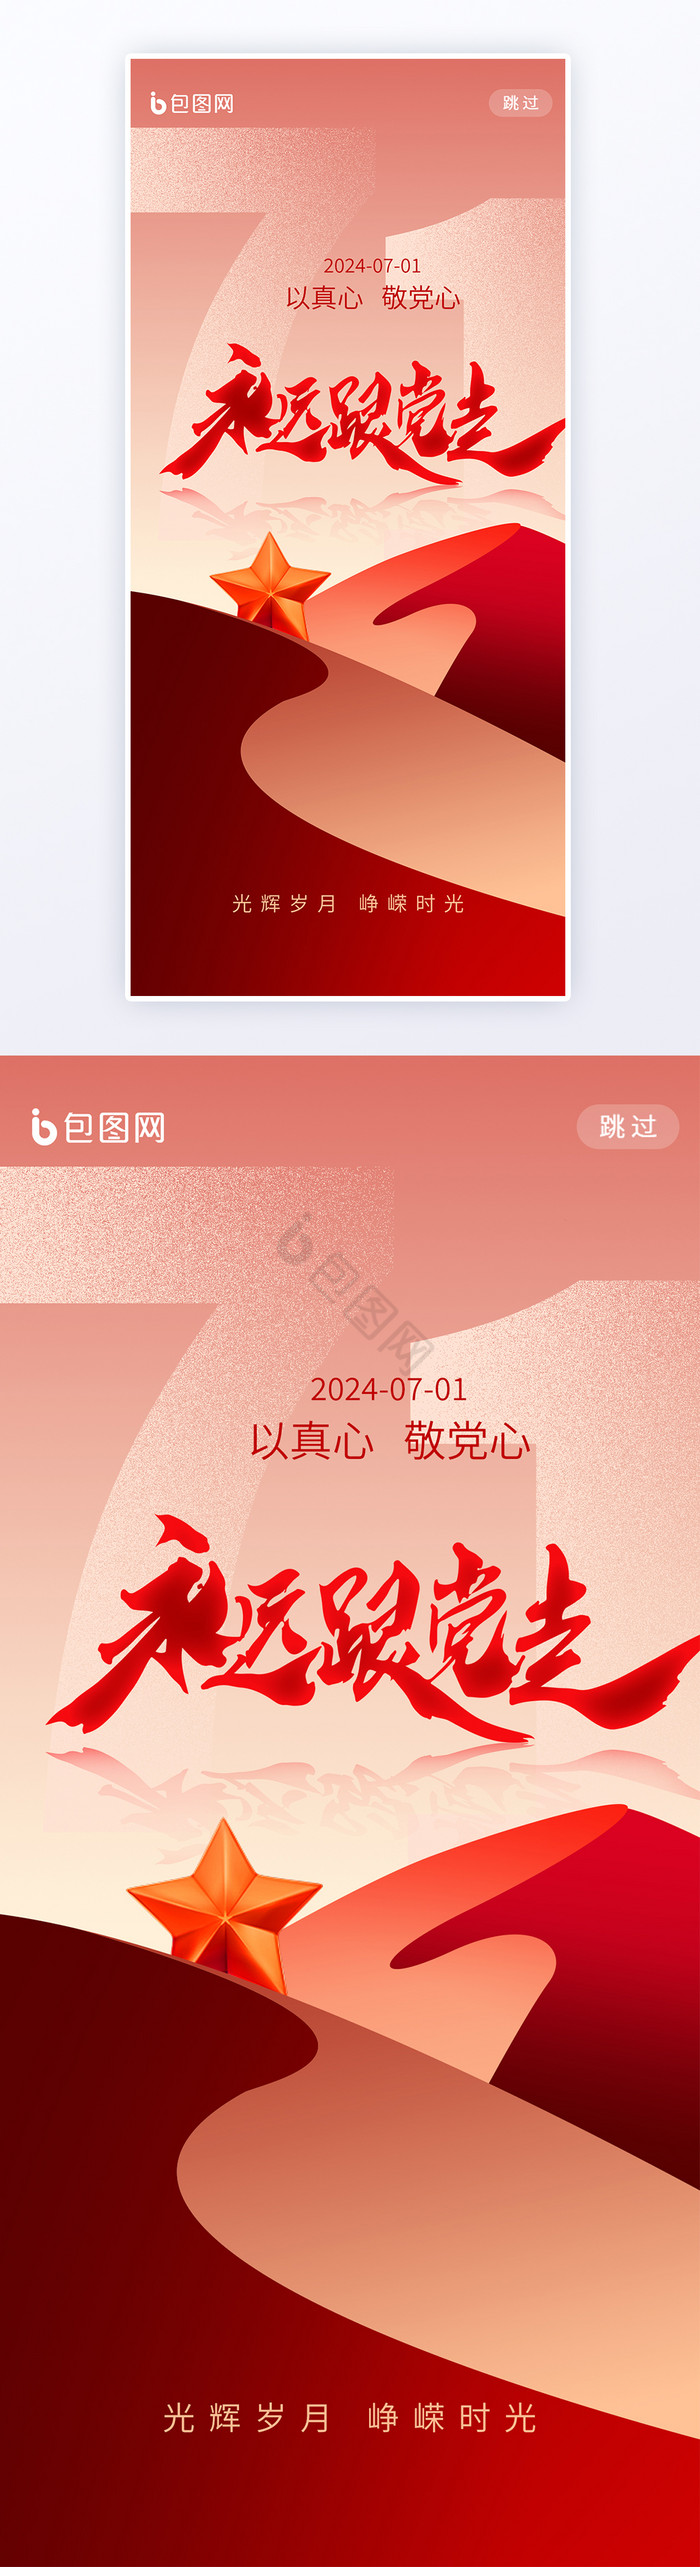 建党节七一节日文字变形h5海报